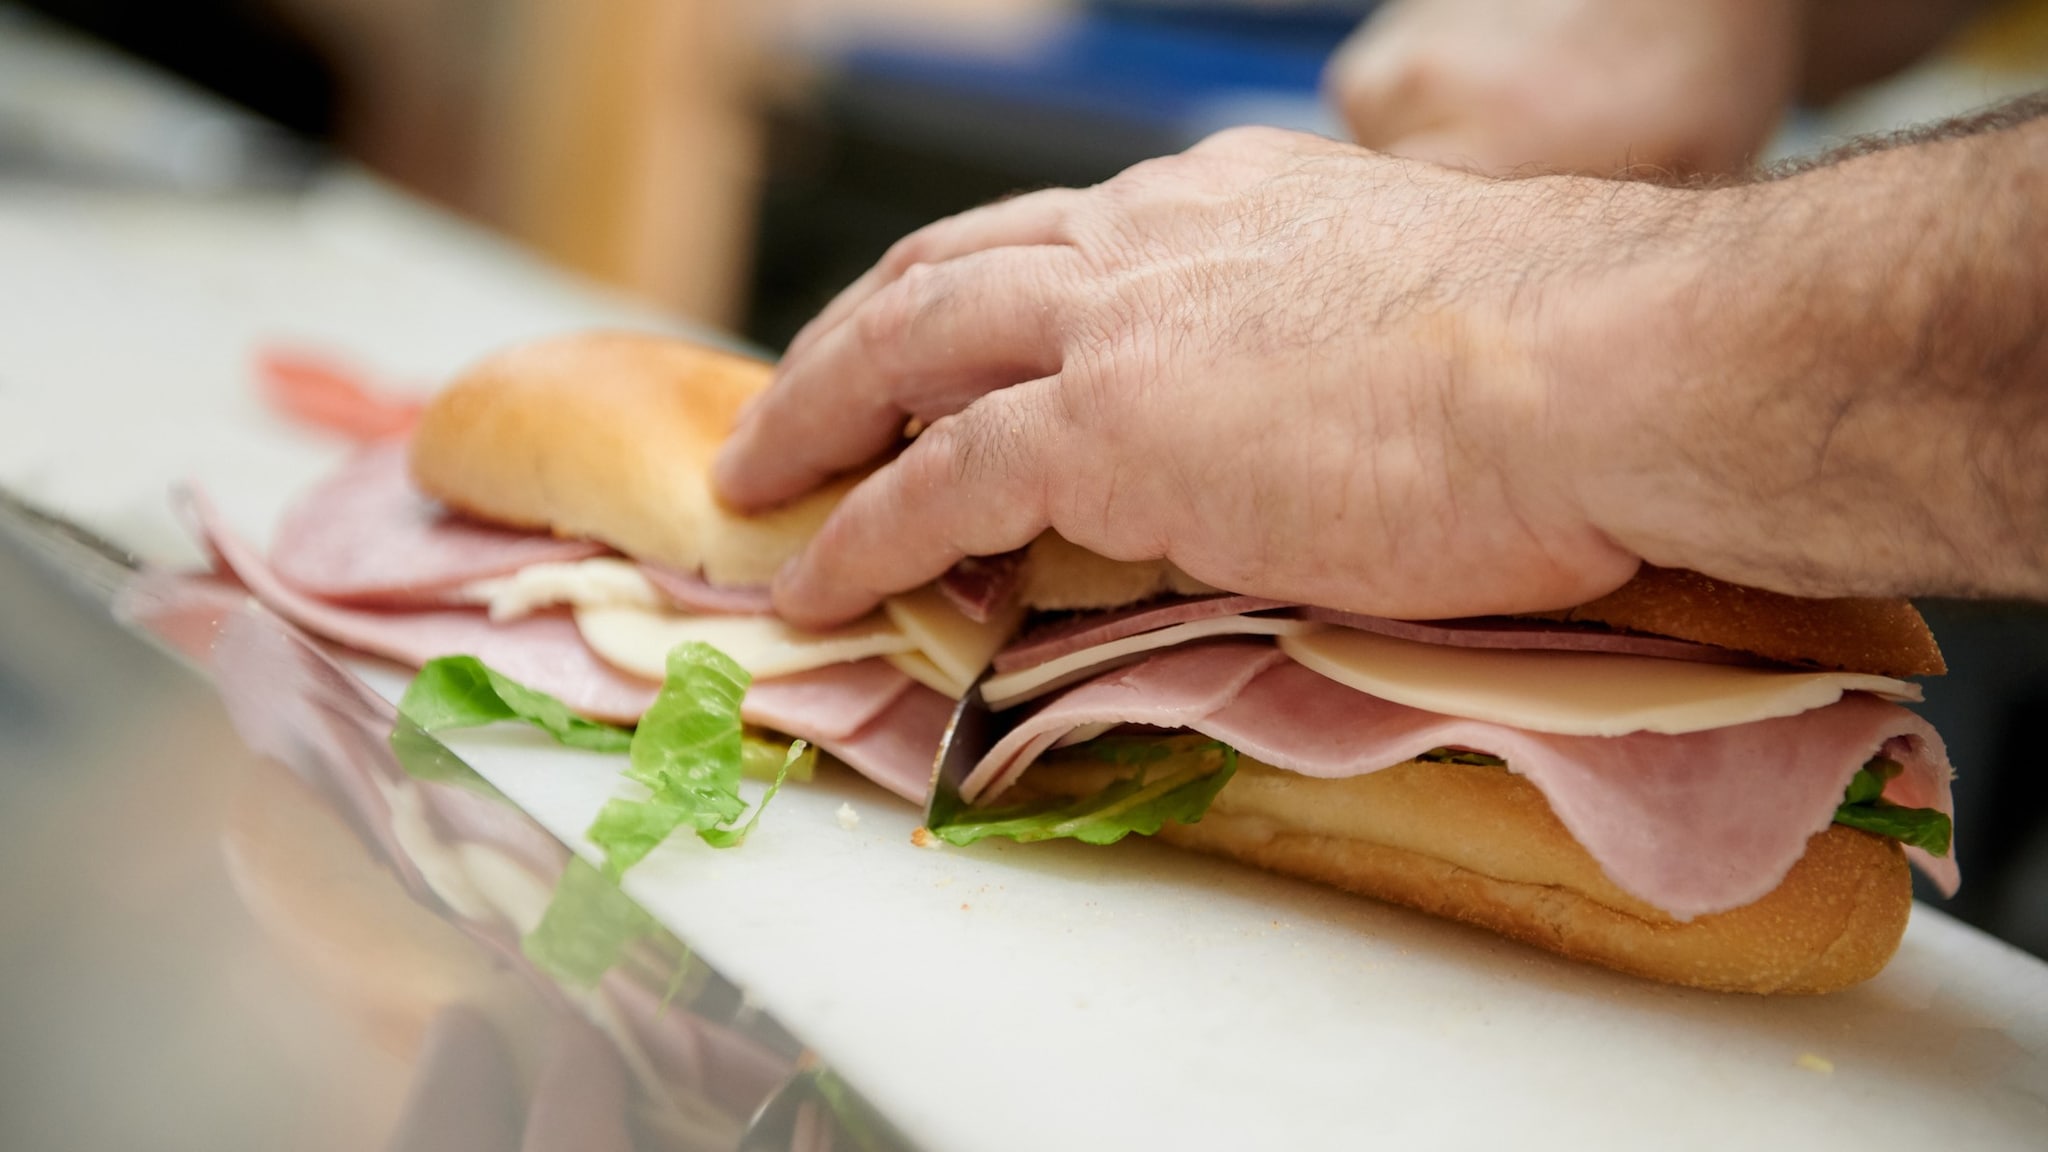 A person preparing a deli meat sub sandwich on a white cutting board.